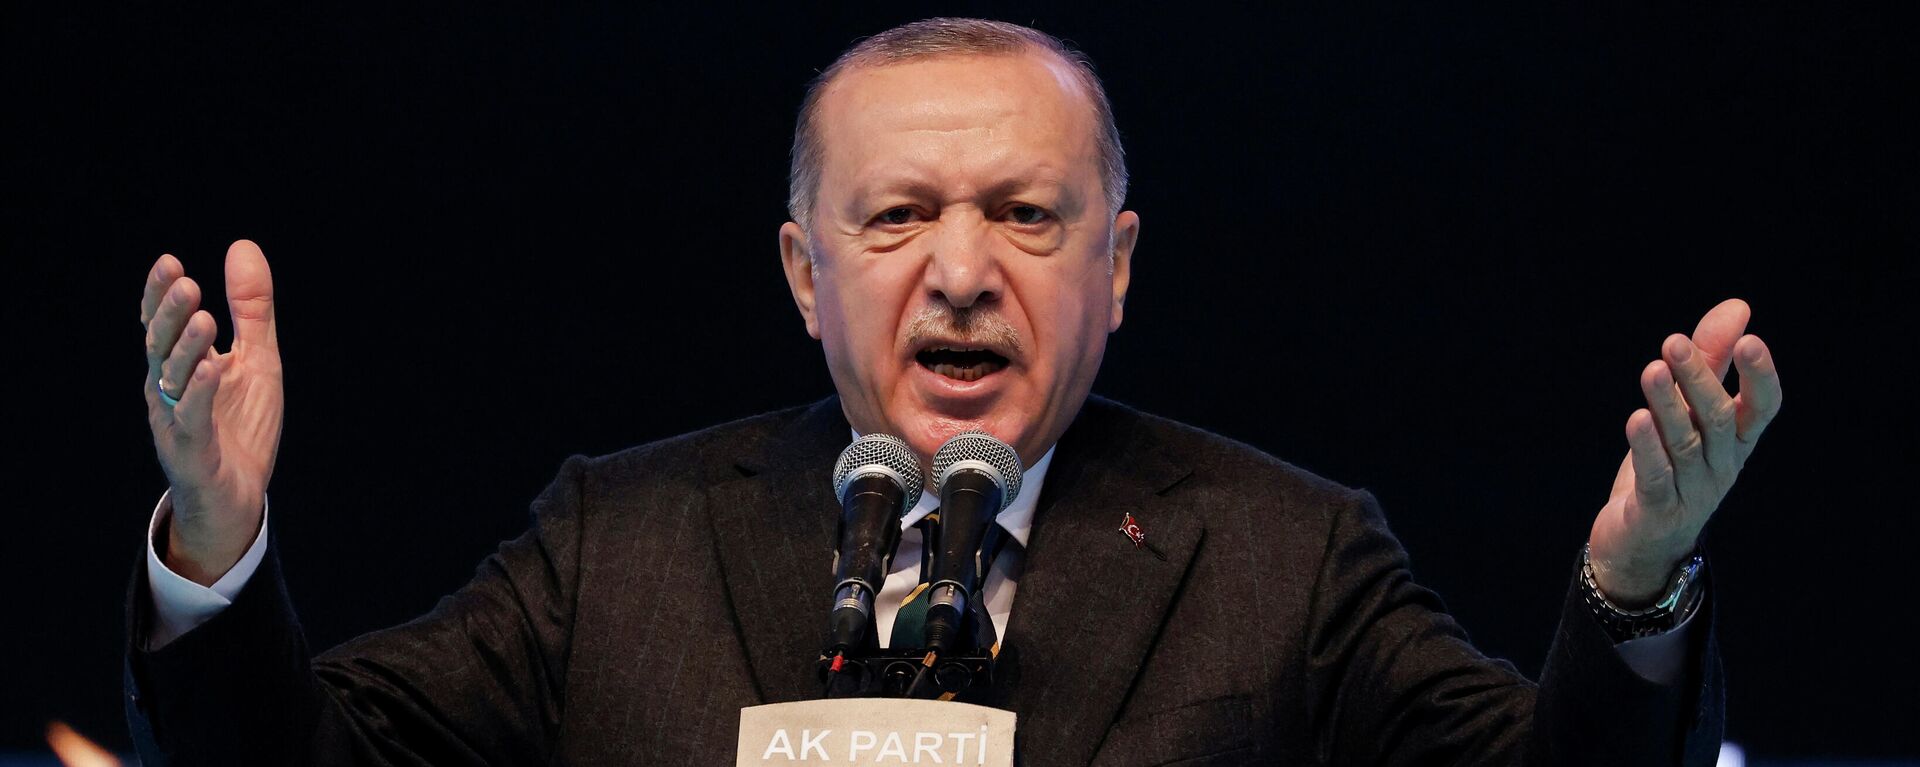 Президент Турции Реджеп Тайип Эрдоган - Sputnik Узбекистан, 1920, 13.04.2021